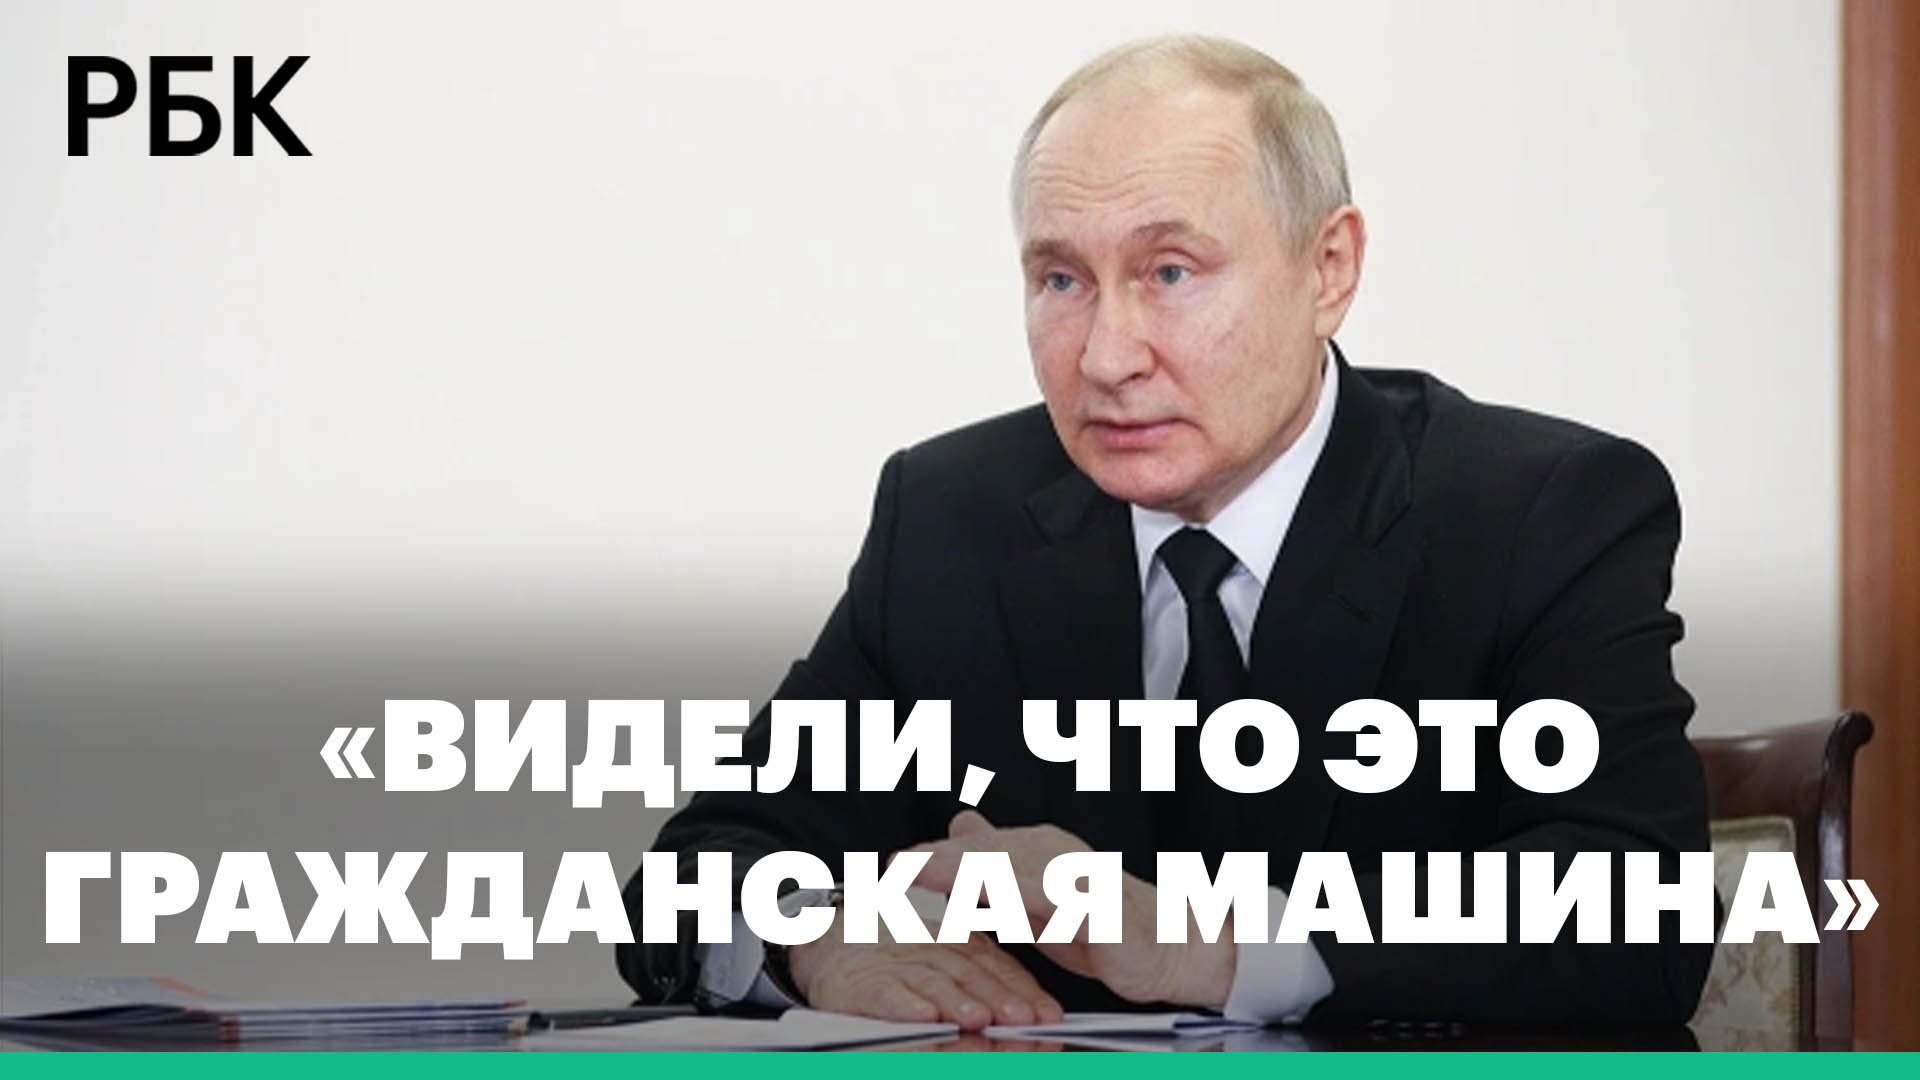 Путин назвал терактом нападение на Брянскую область